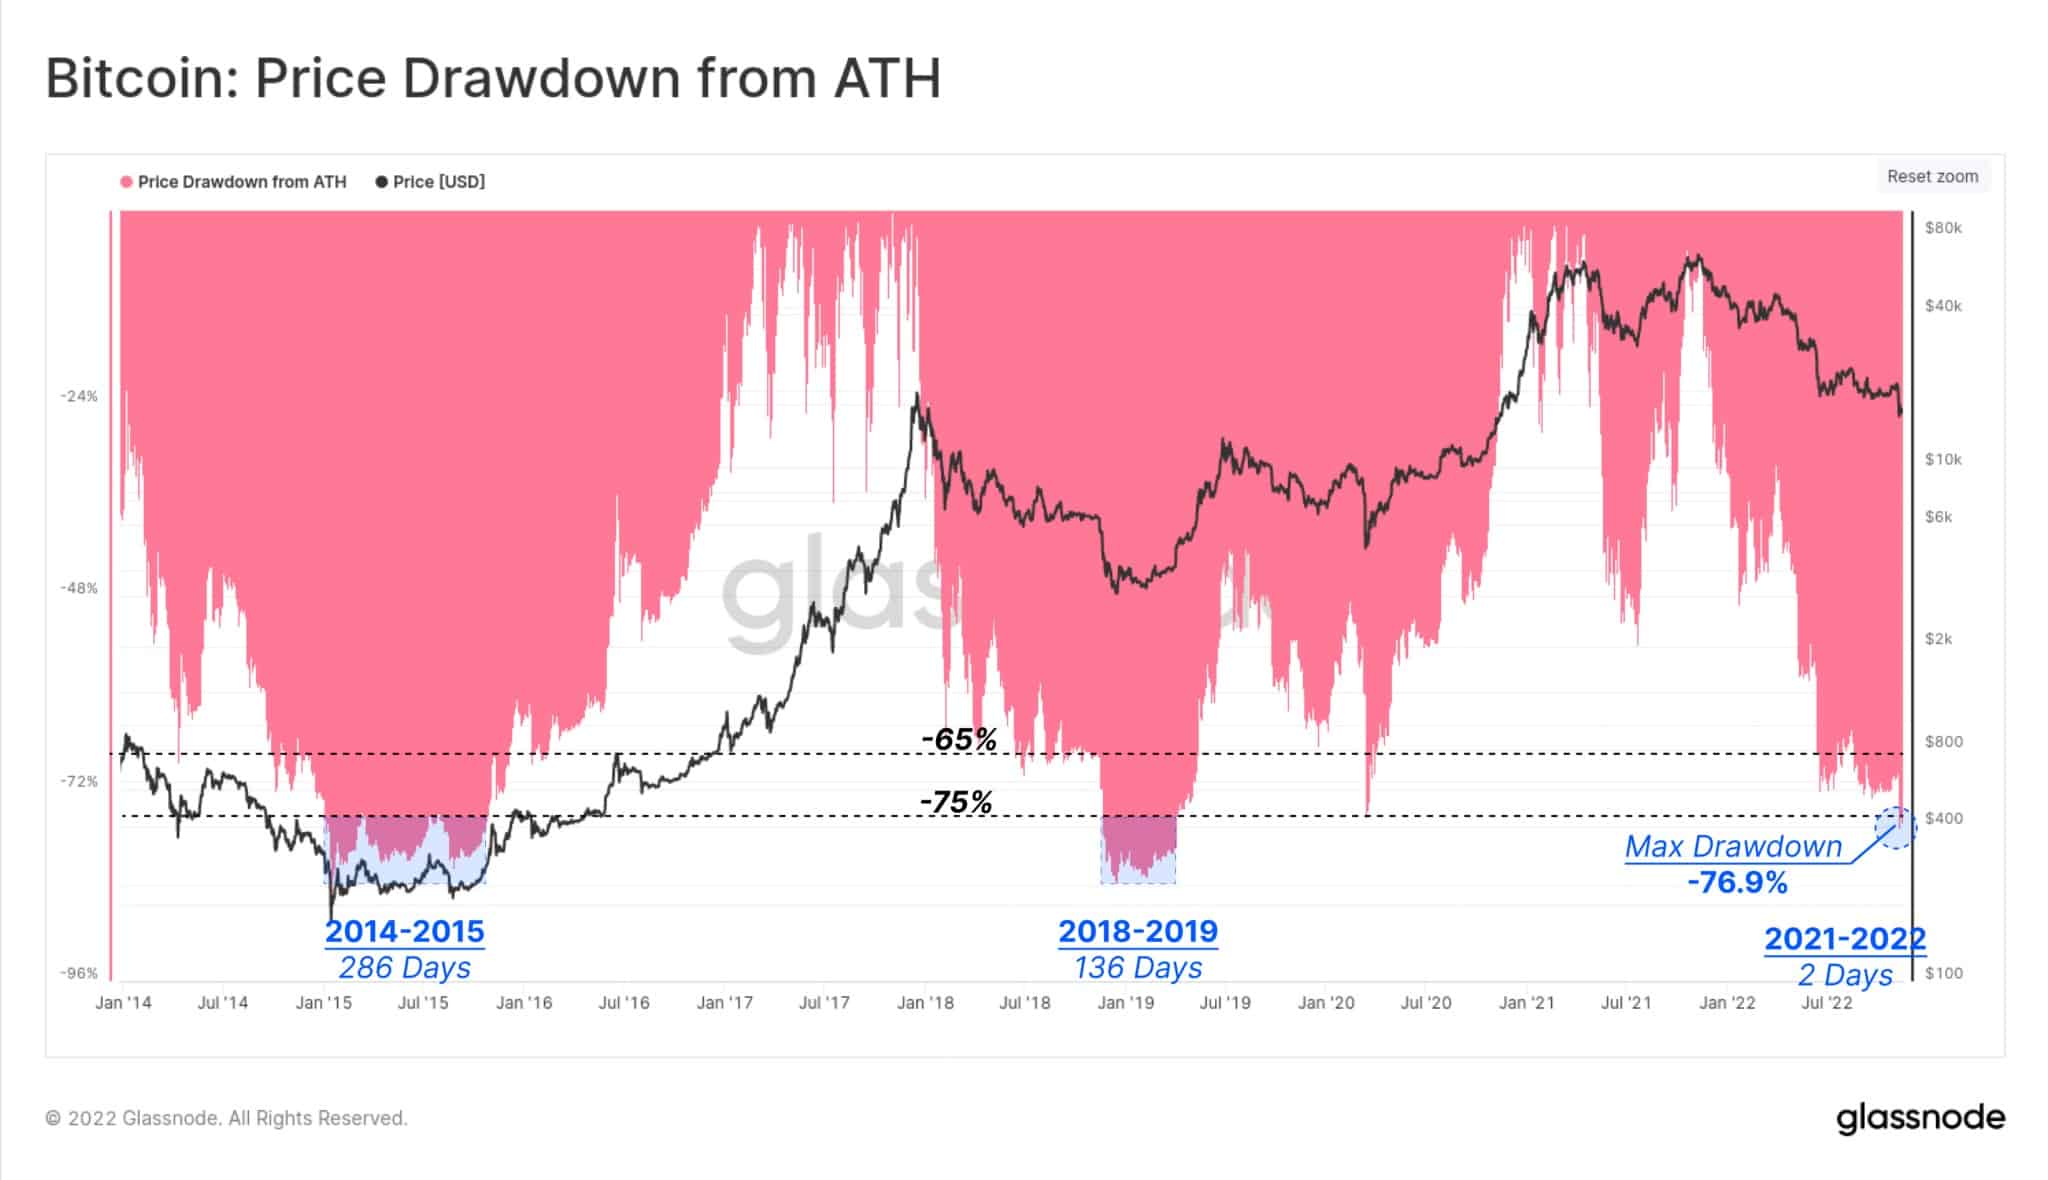 Discesa dei prezzi dall'ATH: (Fonte: Glassnode)